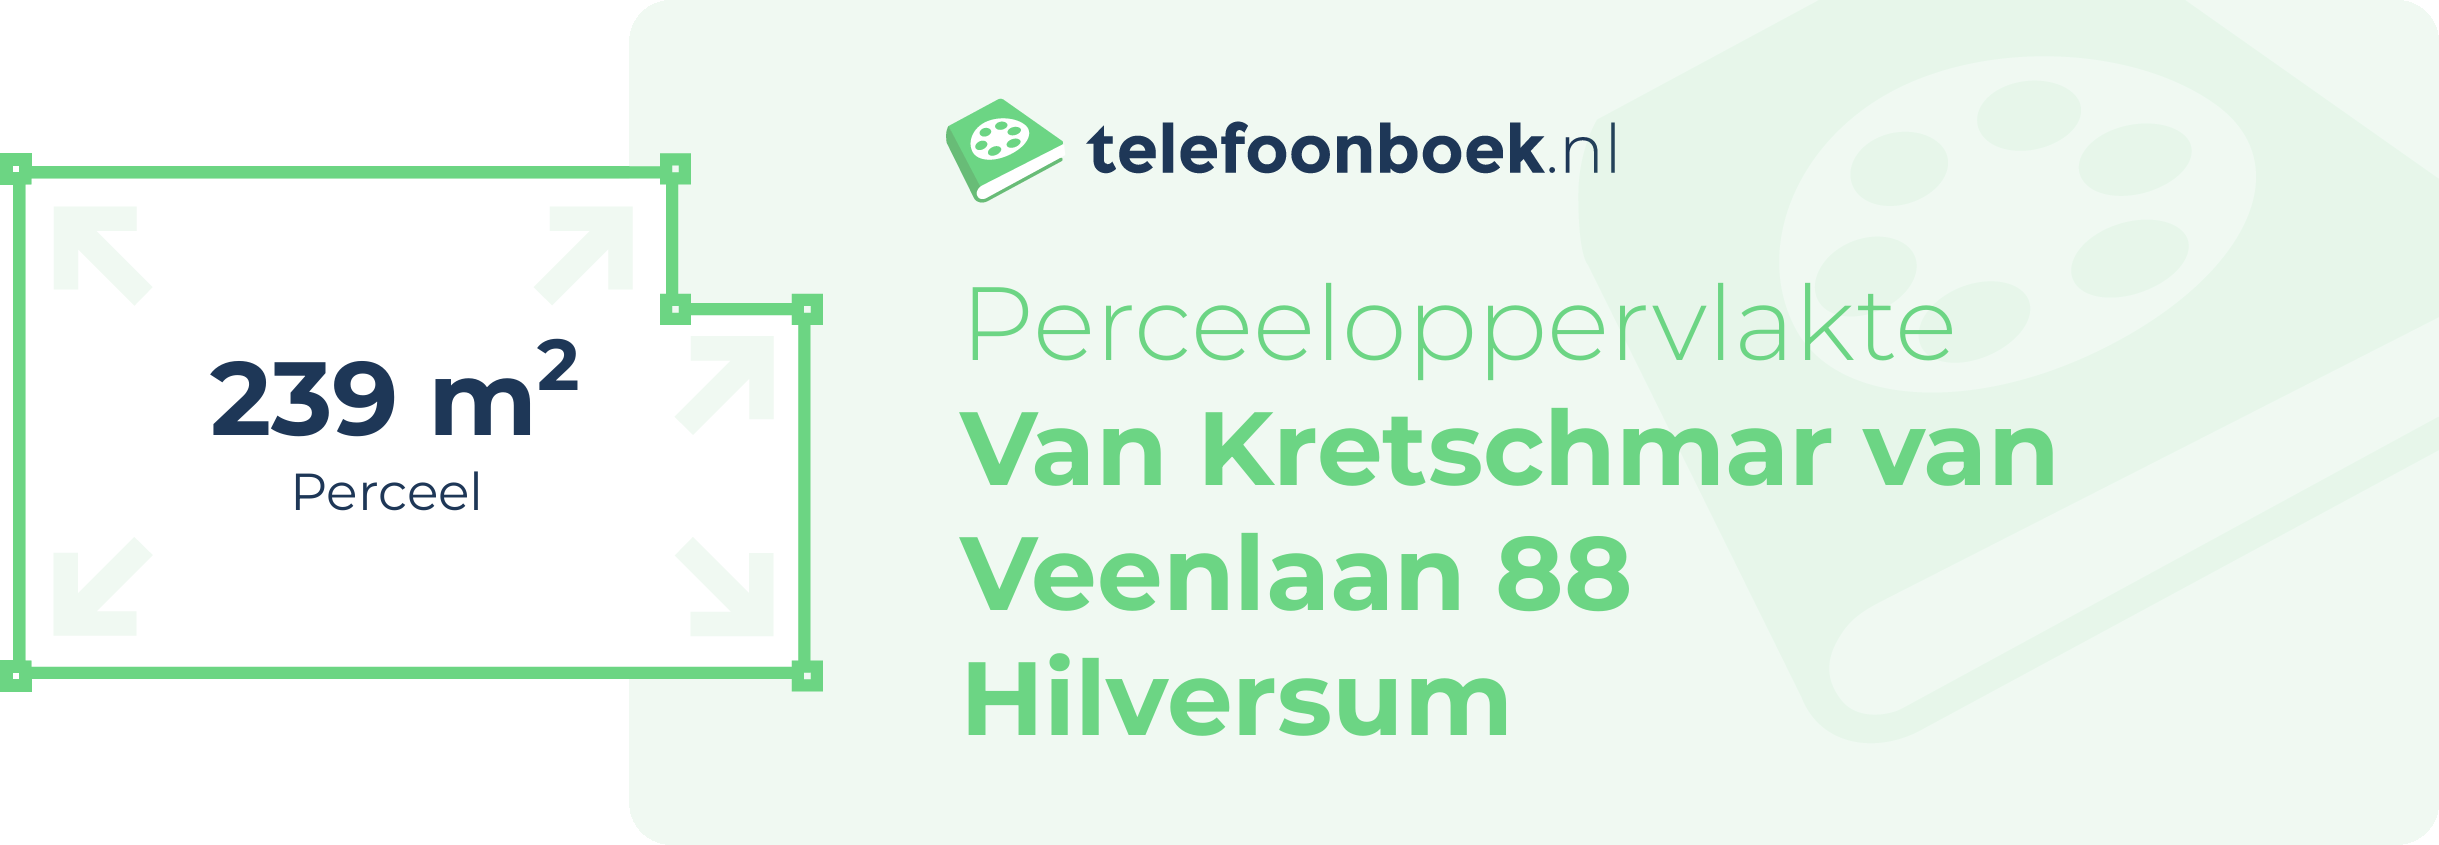 Perceeloppervlakte Van Kretschmar Van Veenlaan 88 Hilversum